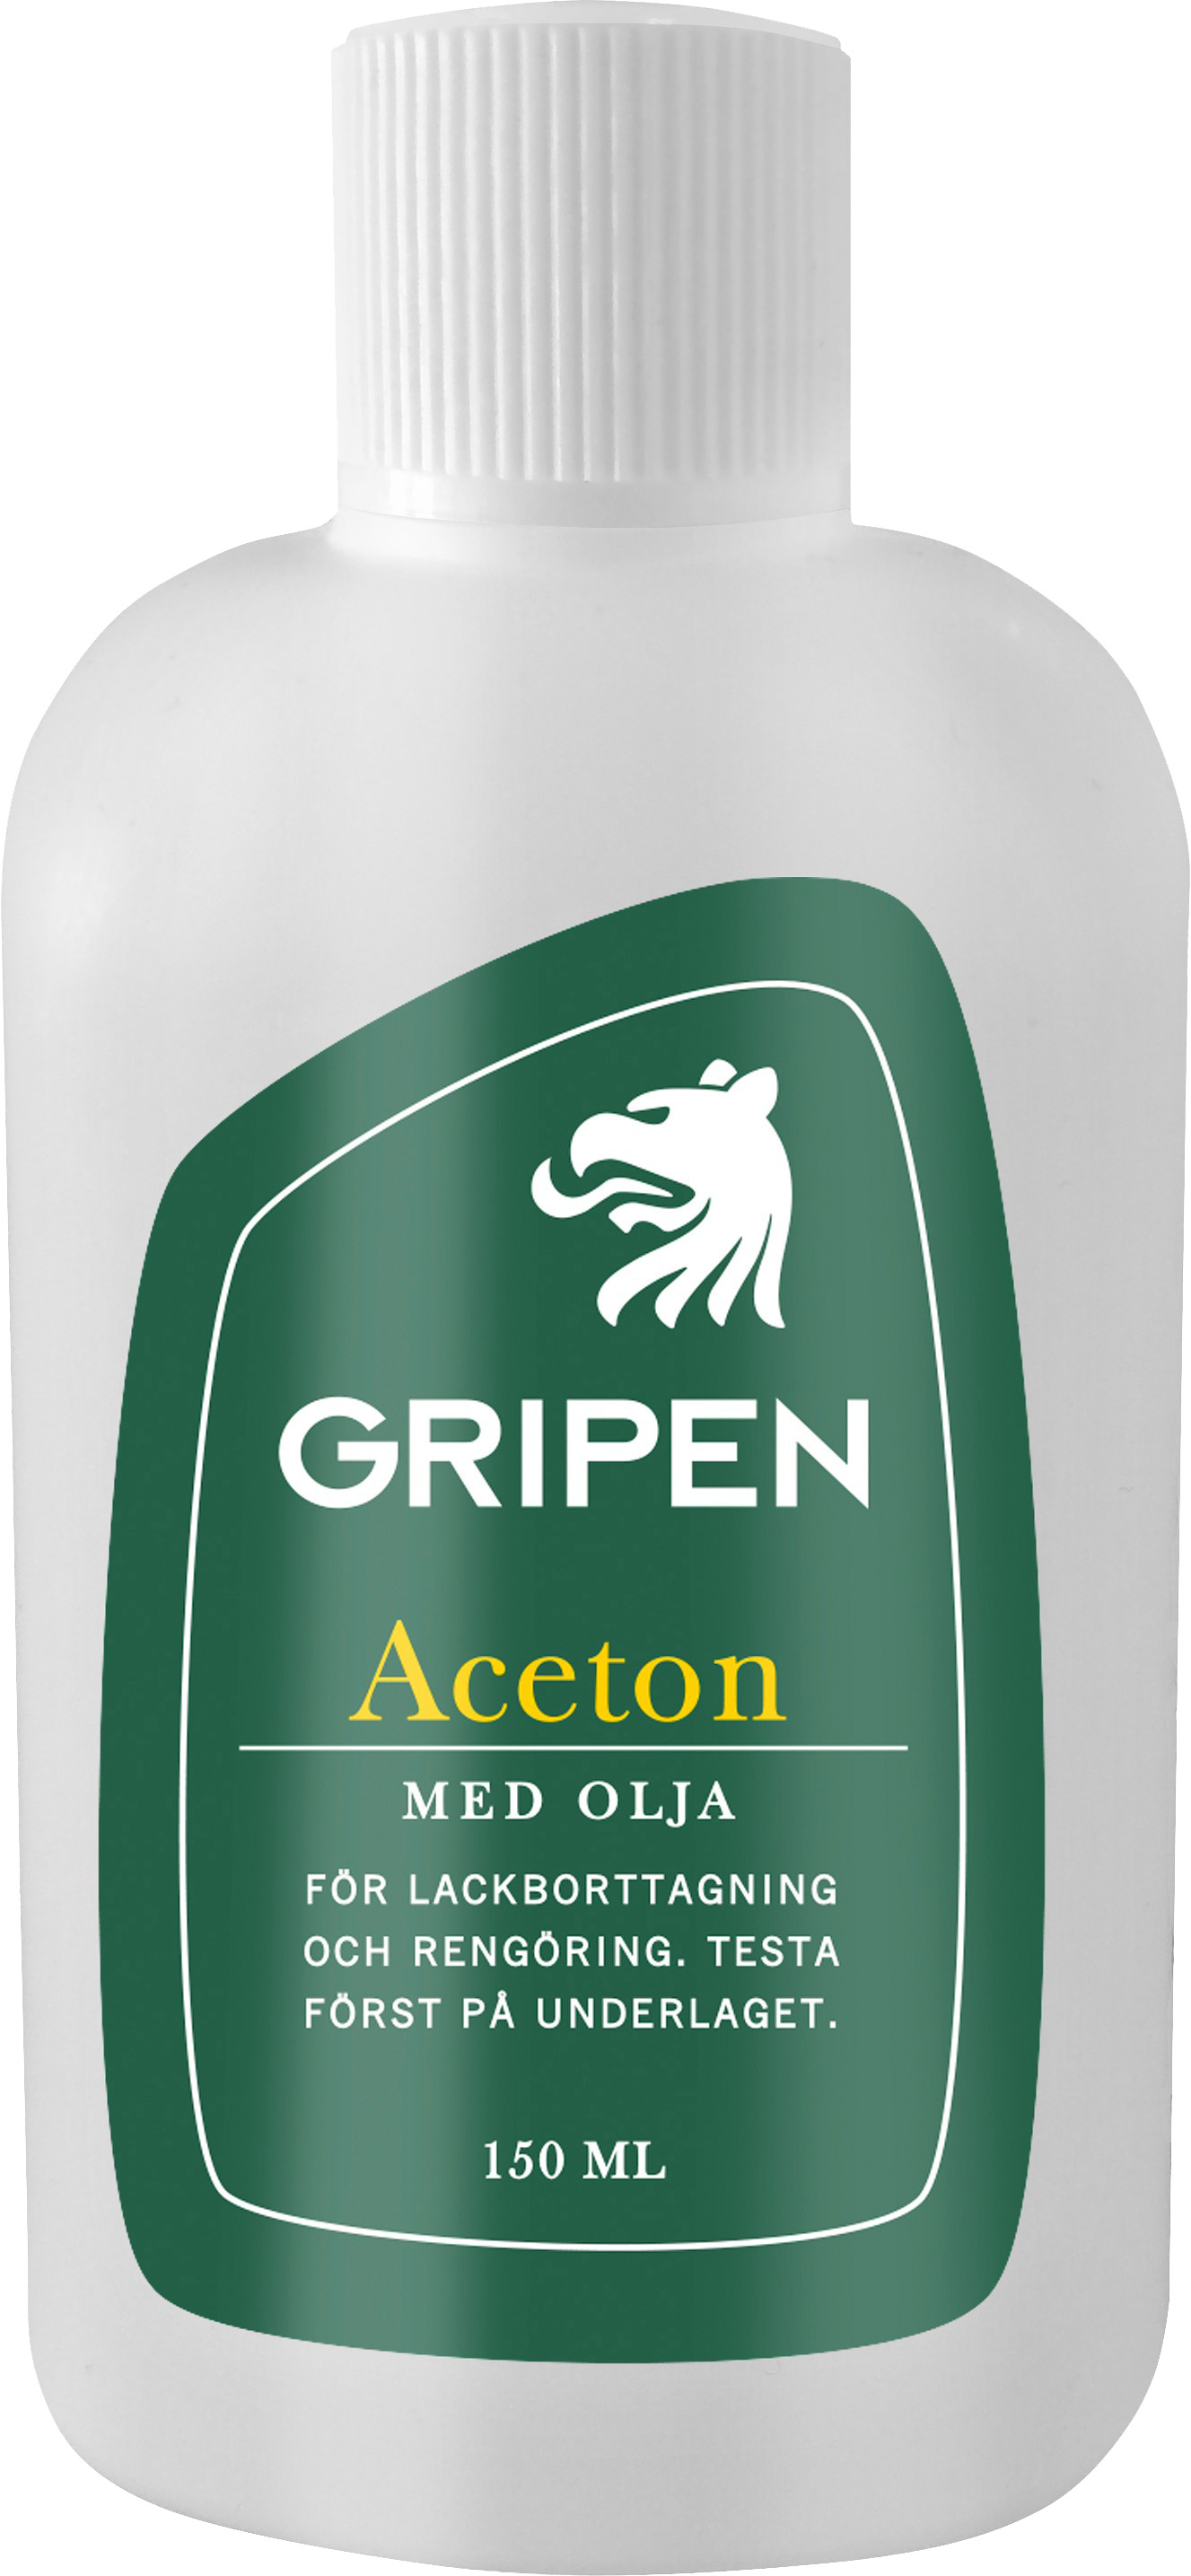 Flaska med kemisk aceton med olja från Gripen